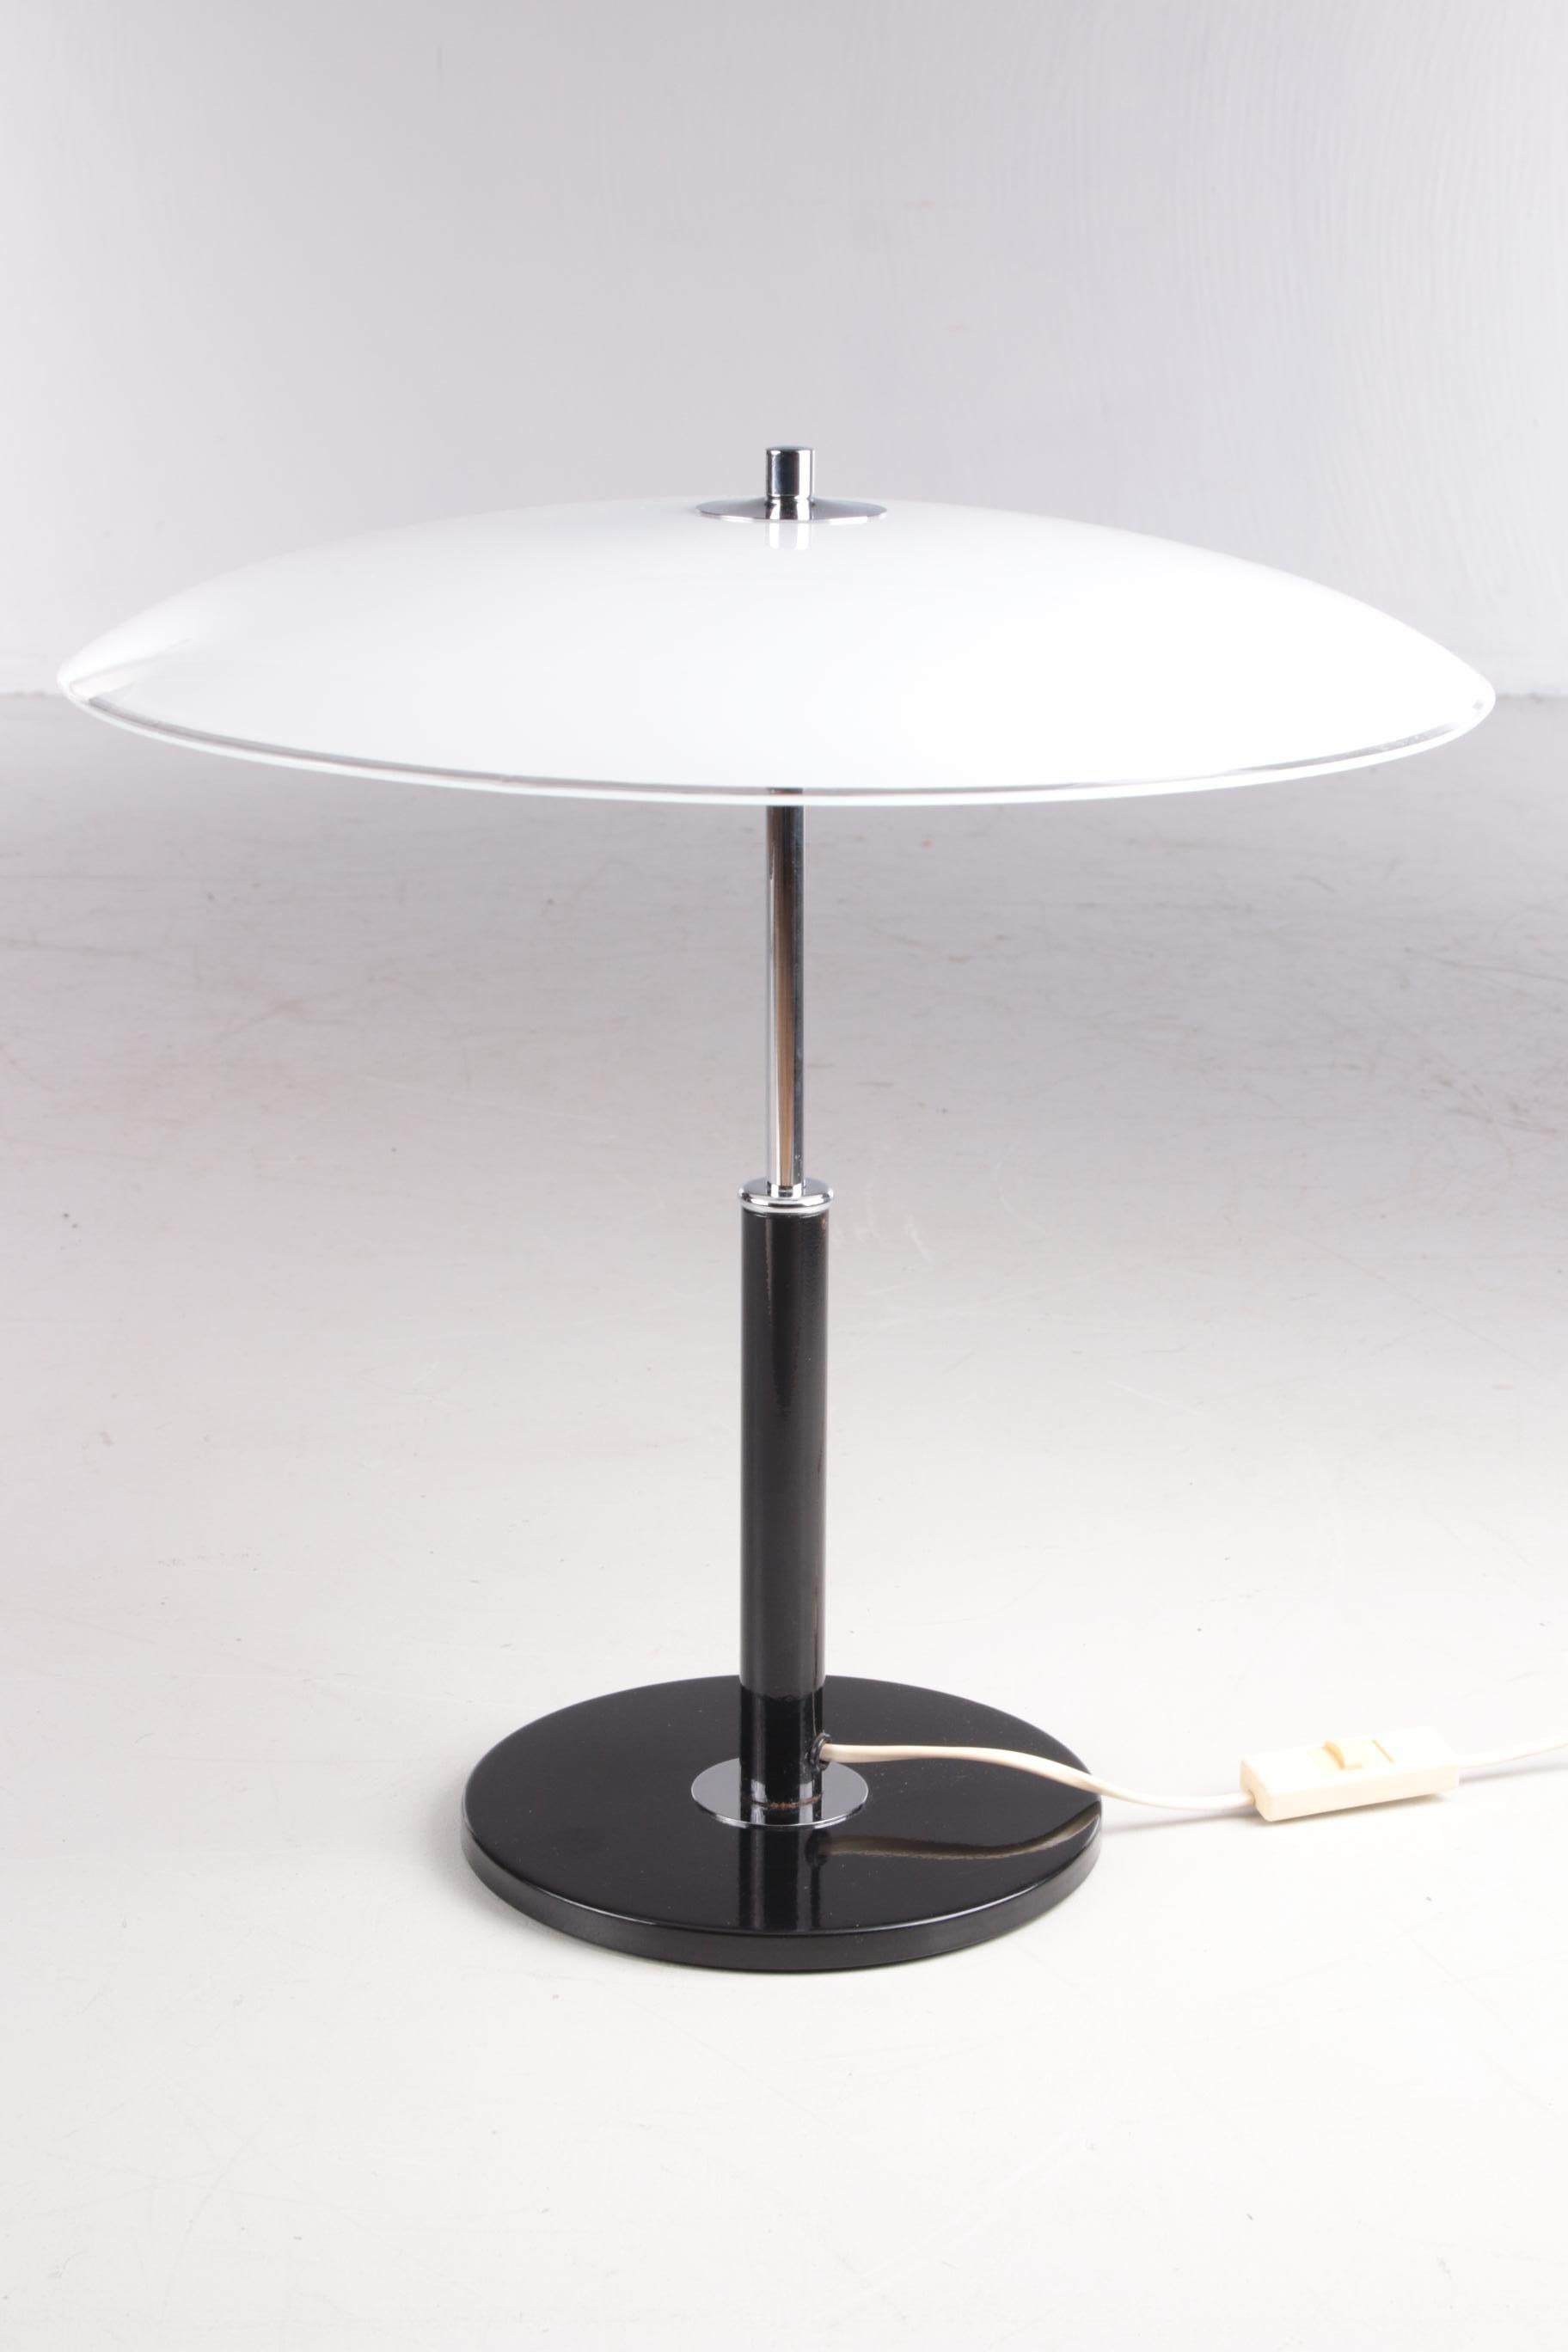 Vieille lampe de bureau champignon modèle B8802 chromé avec verre opale.


Il s'agit d'une lampe très rare et très recherchée, conçue en Suède et produite pour Ikea au début des années 1990. La lampe dispose de trois petits supports de lampe